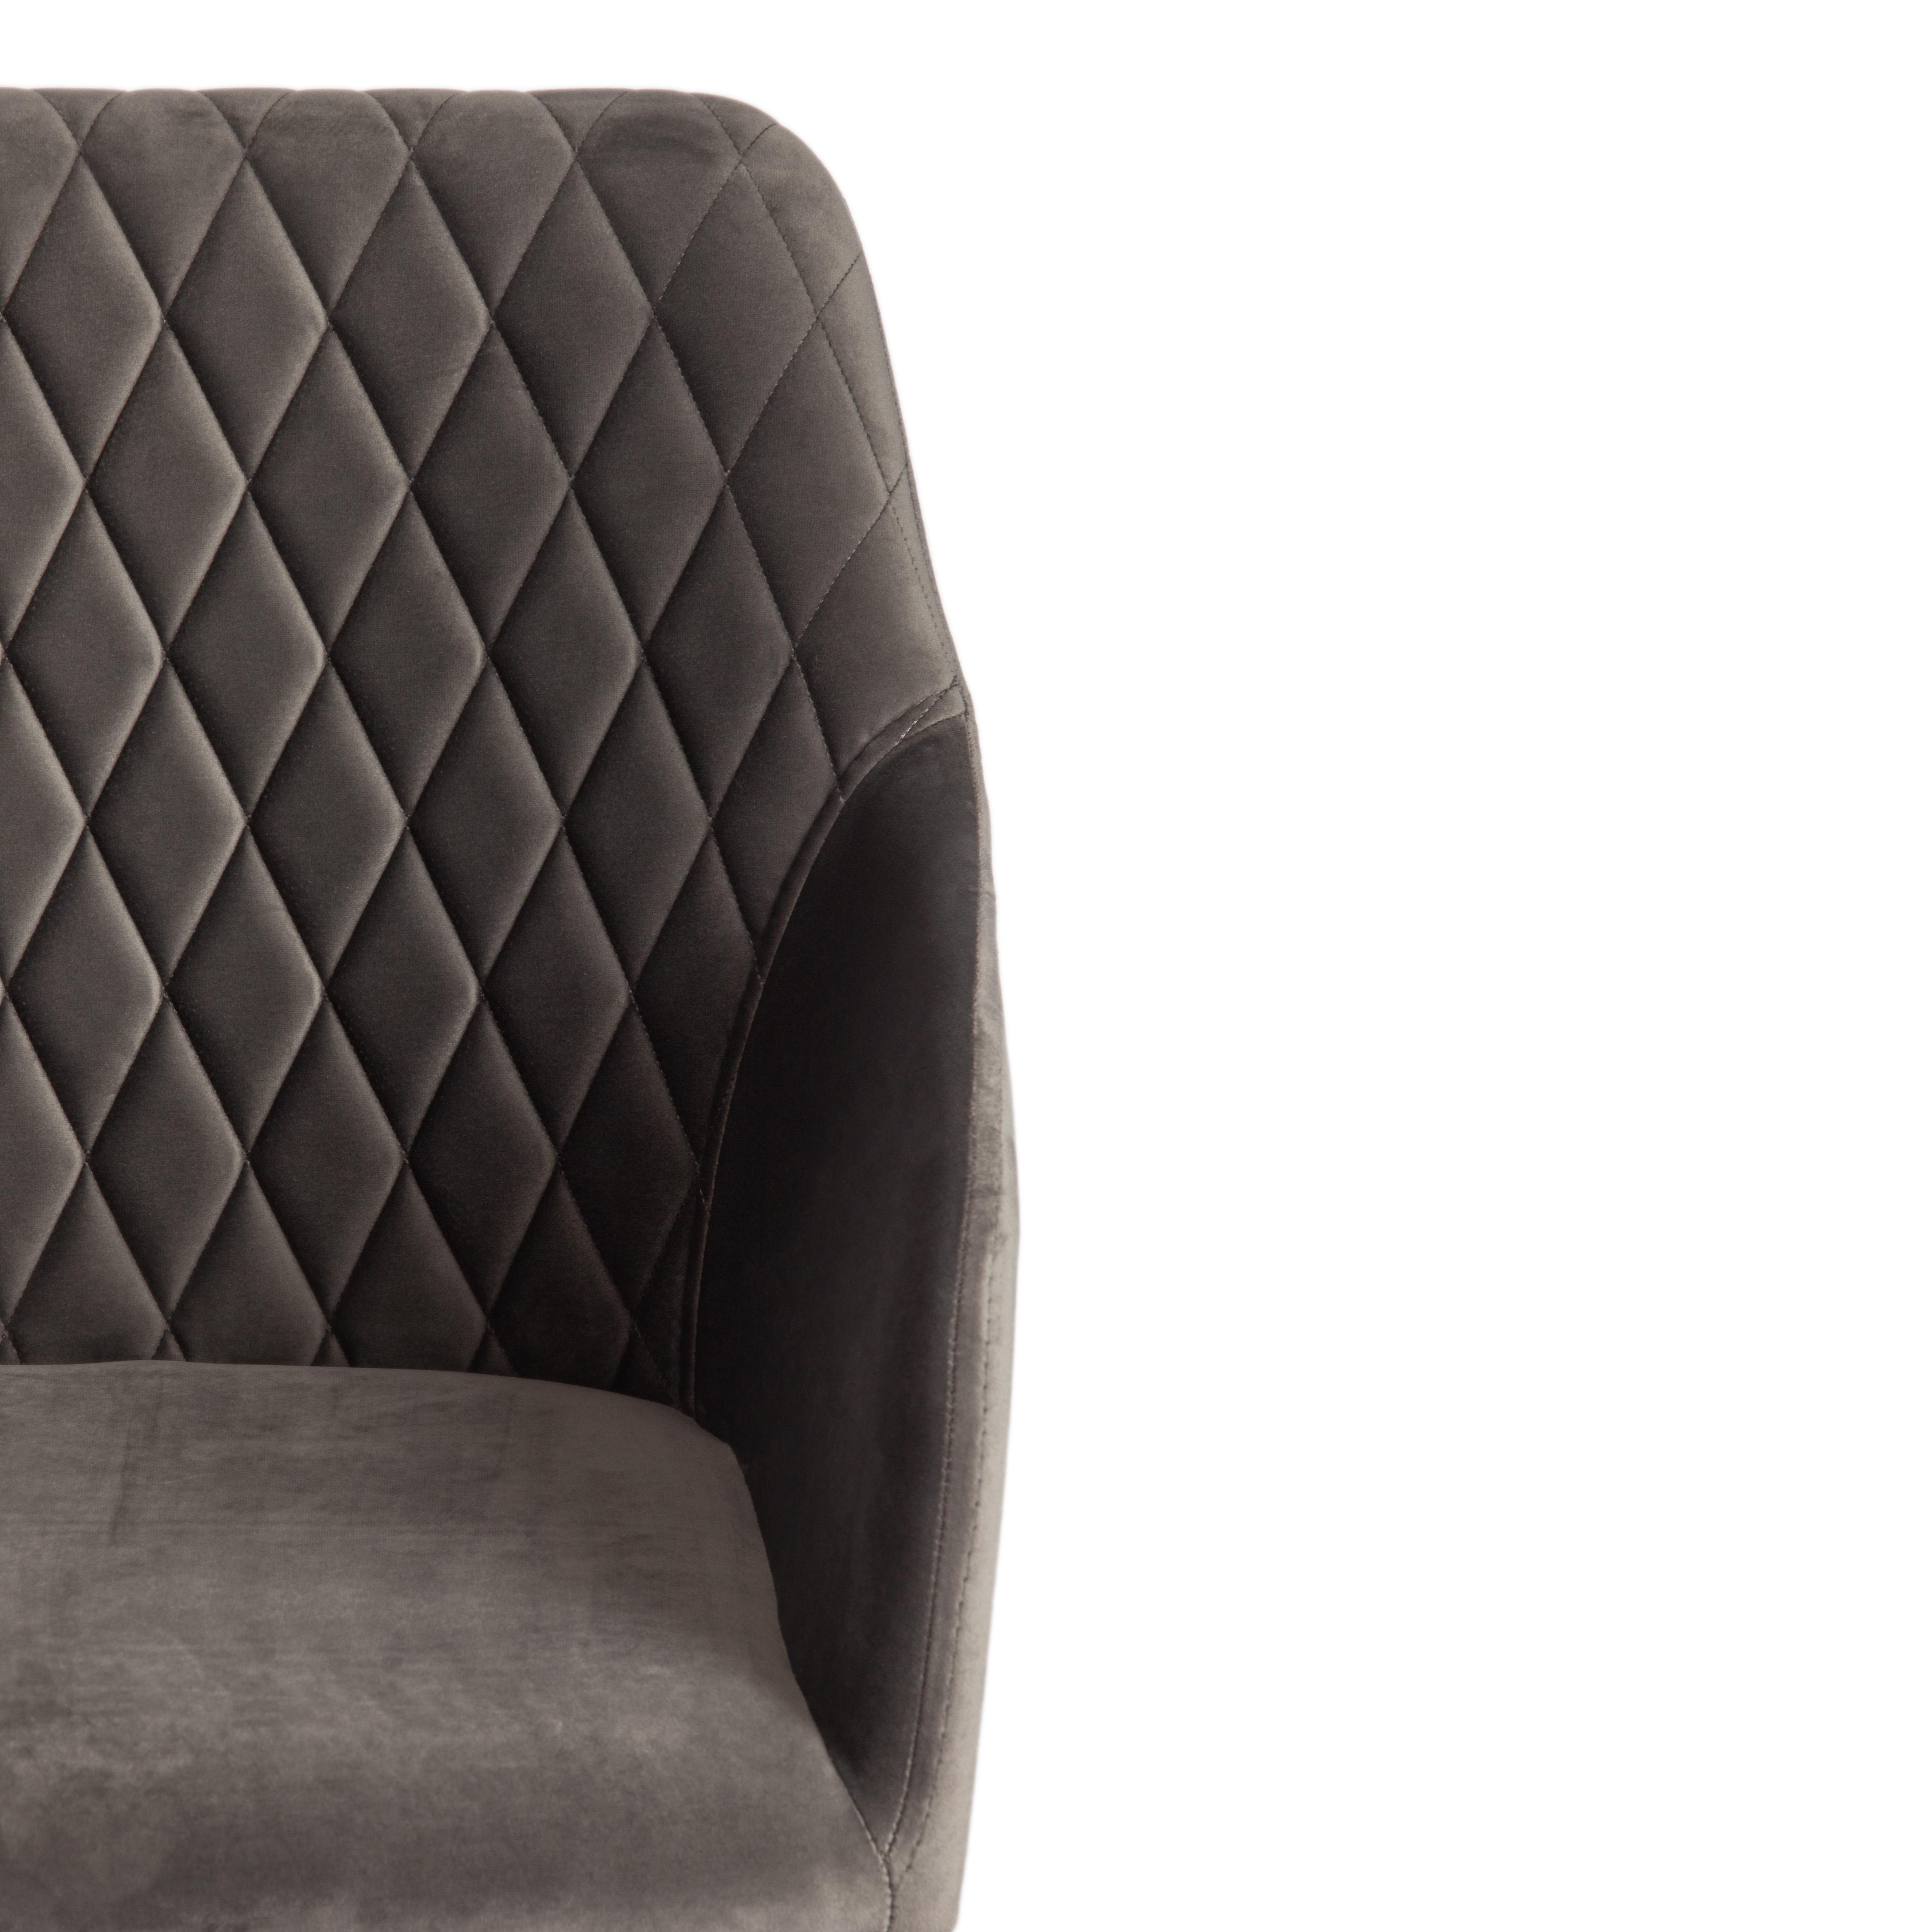 Кресло BREMO (mod. 708) ткань/металл, 58х55х83 см, высота до сиденья 48 см, серый barkhat 26/черный